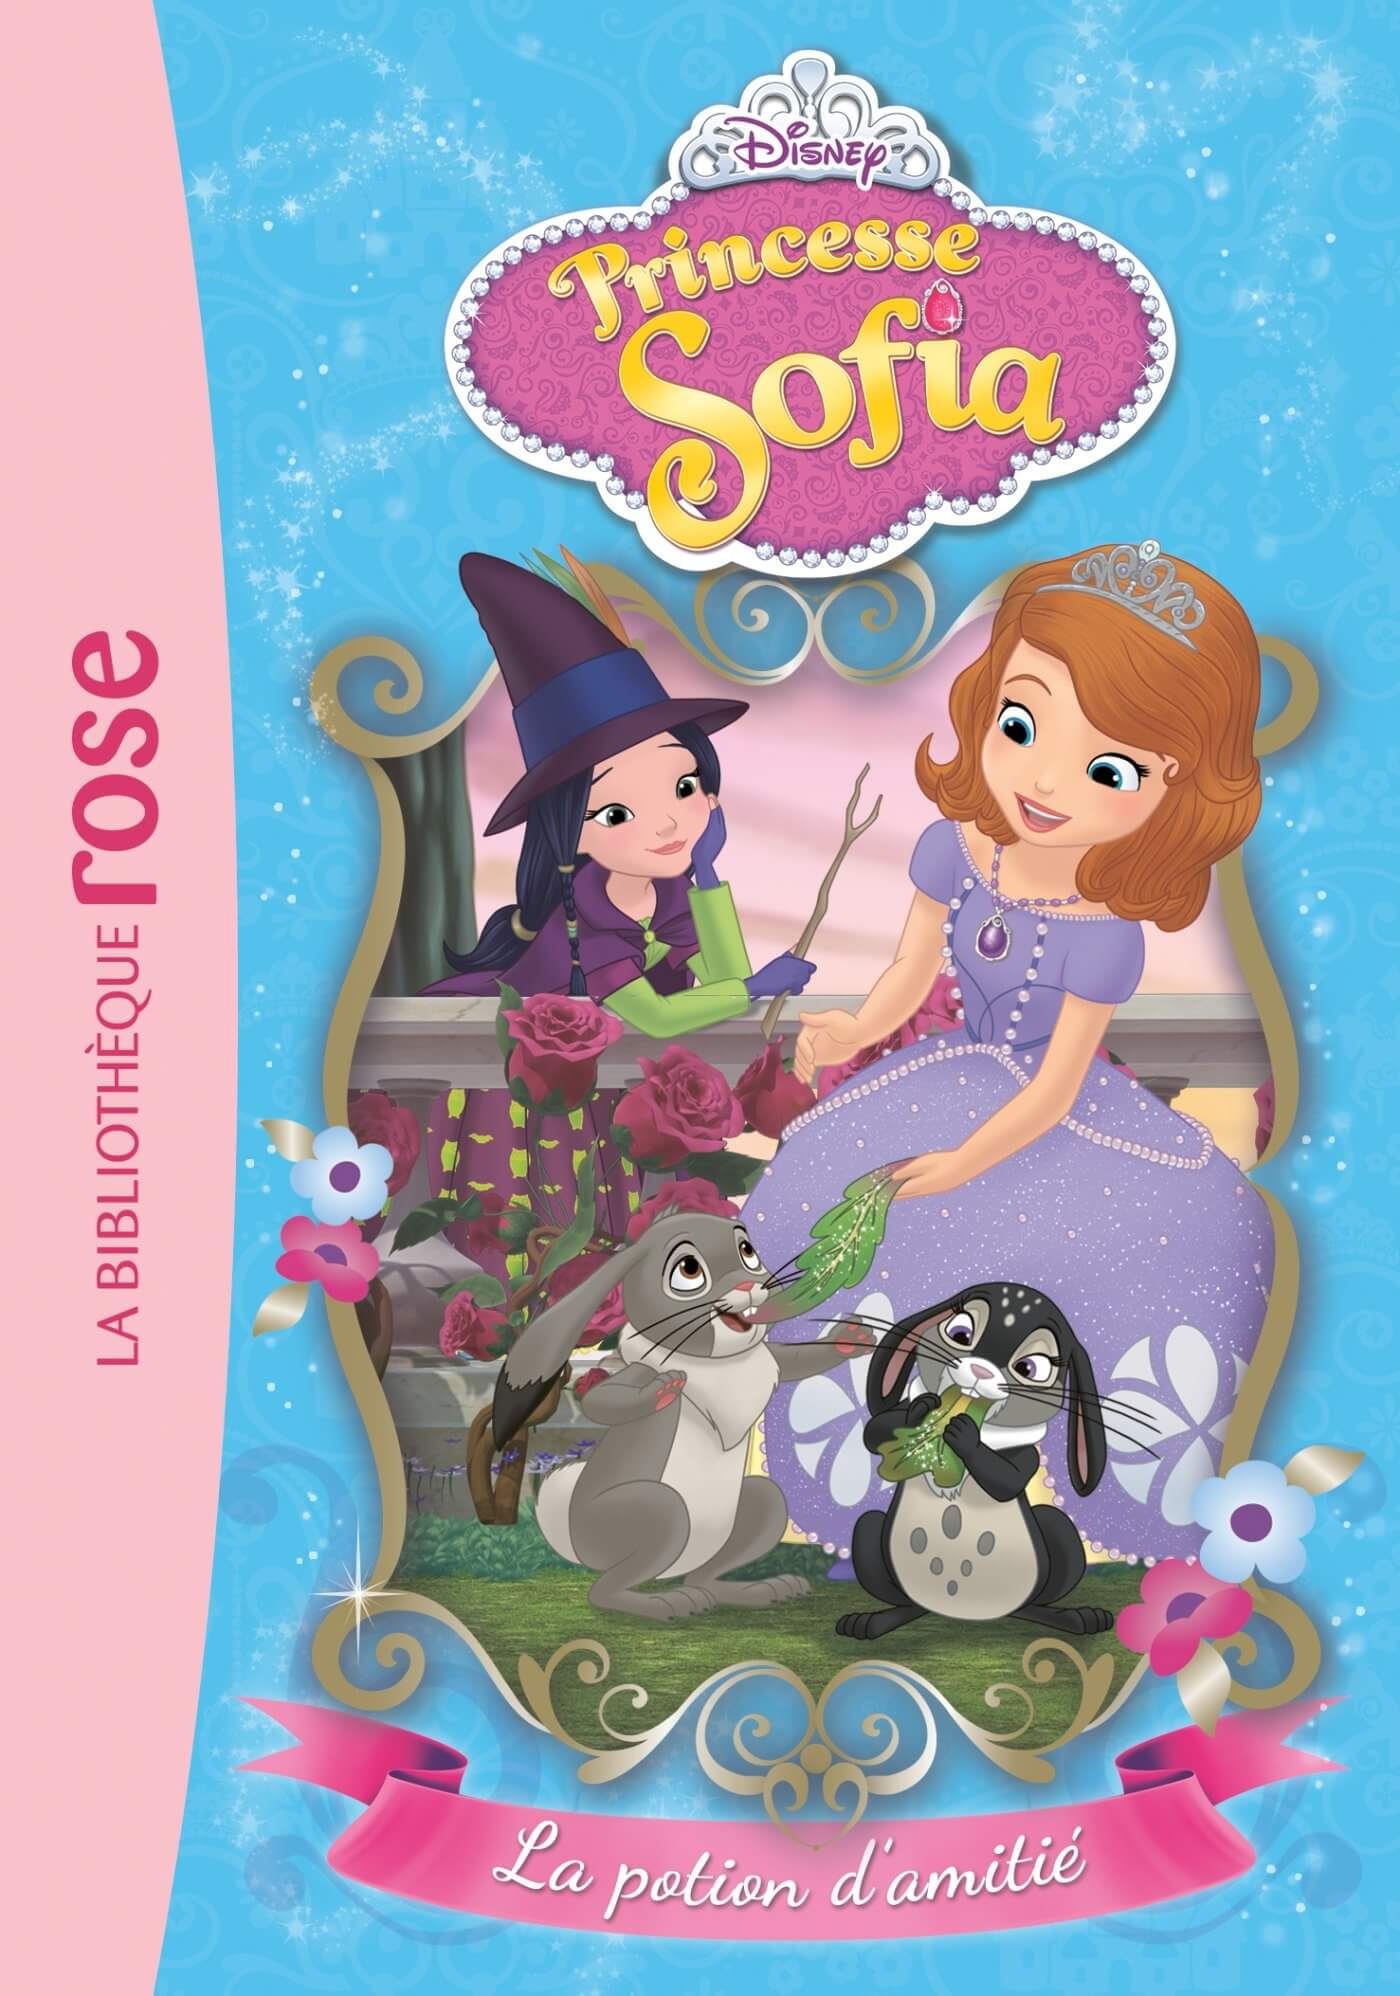 La princesse Sofia - La potion d'amitié